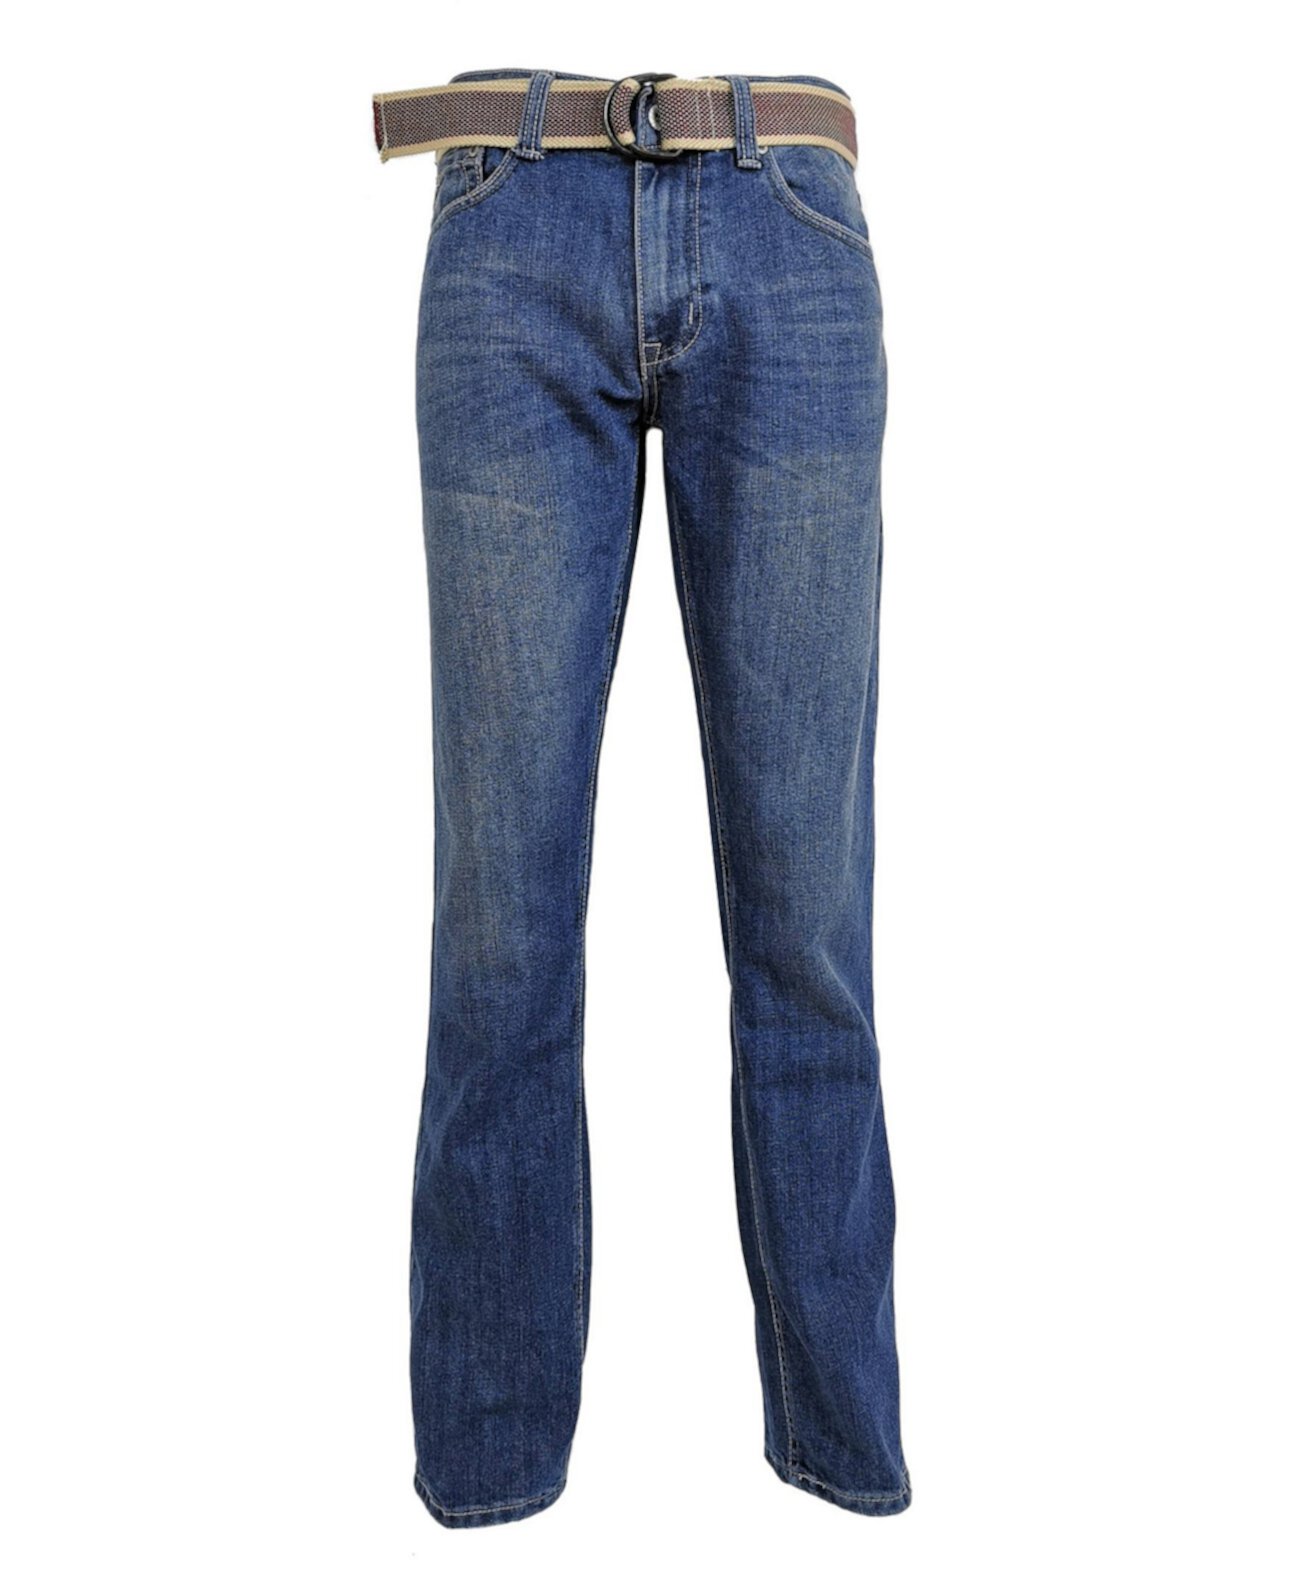 Мужские модные джинсы стандартного кроя с прямыми штанинами Flypaper